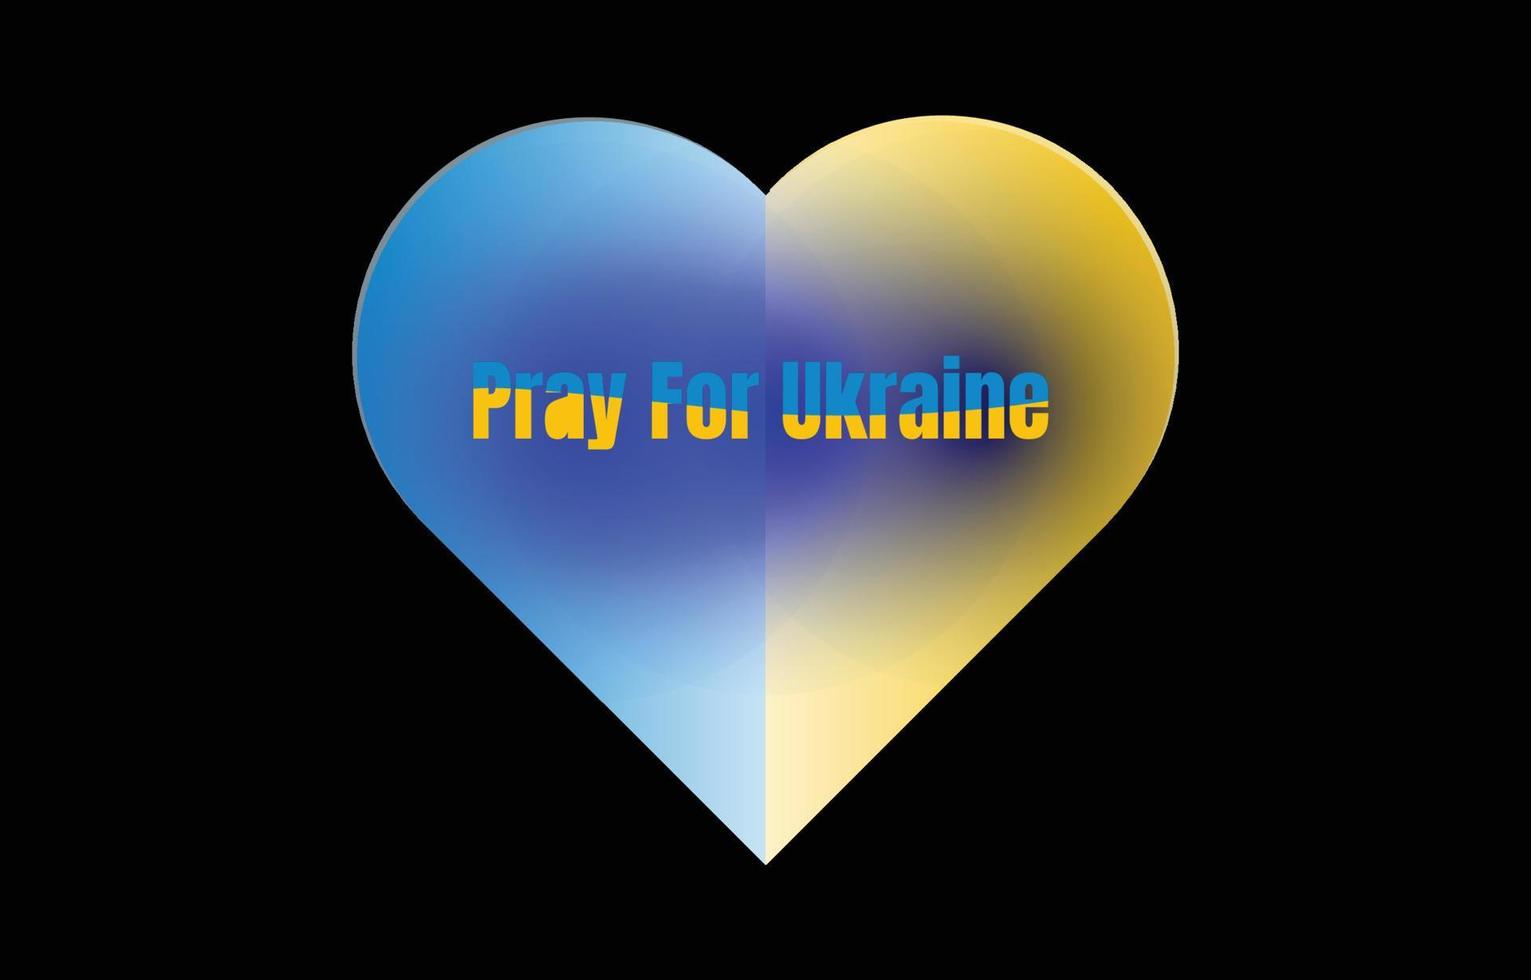 betet für die ukraine, herzen und segen für die ukraine, vektor